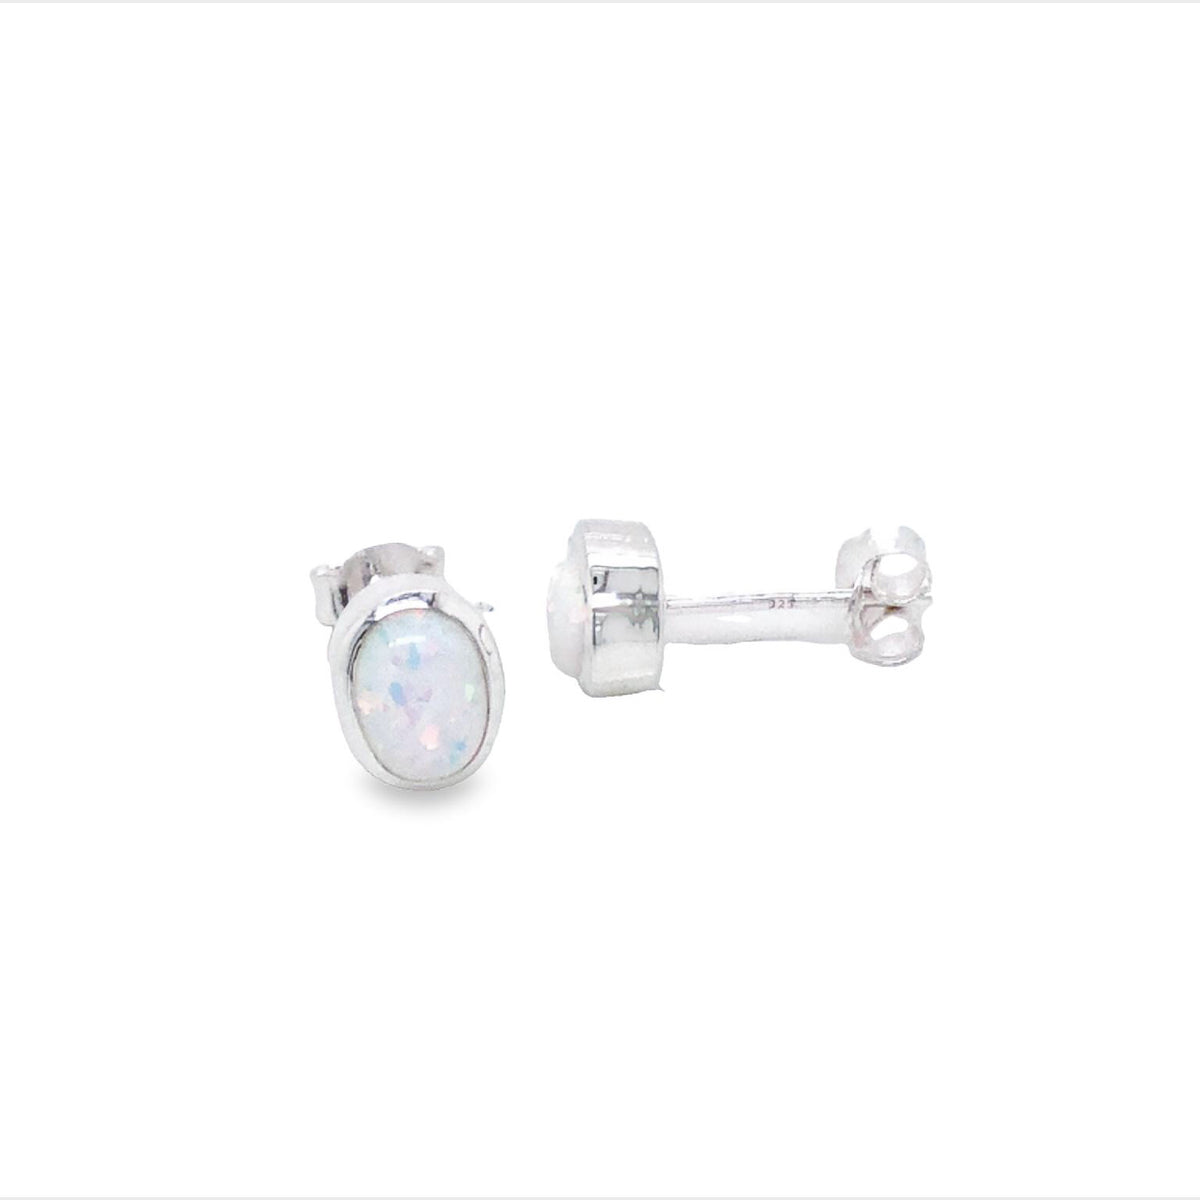 Onatah Sterling Silver White Opalite Oval Bezel Set Stud Earrings